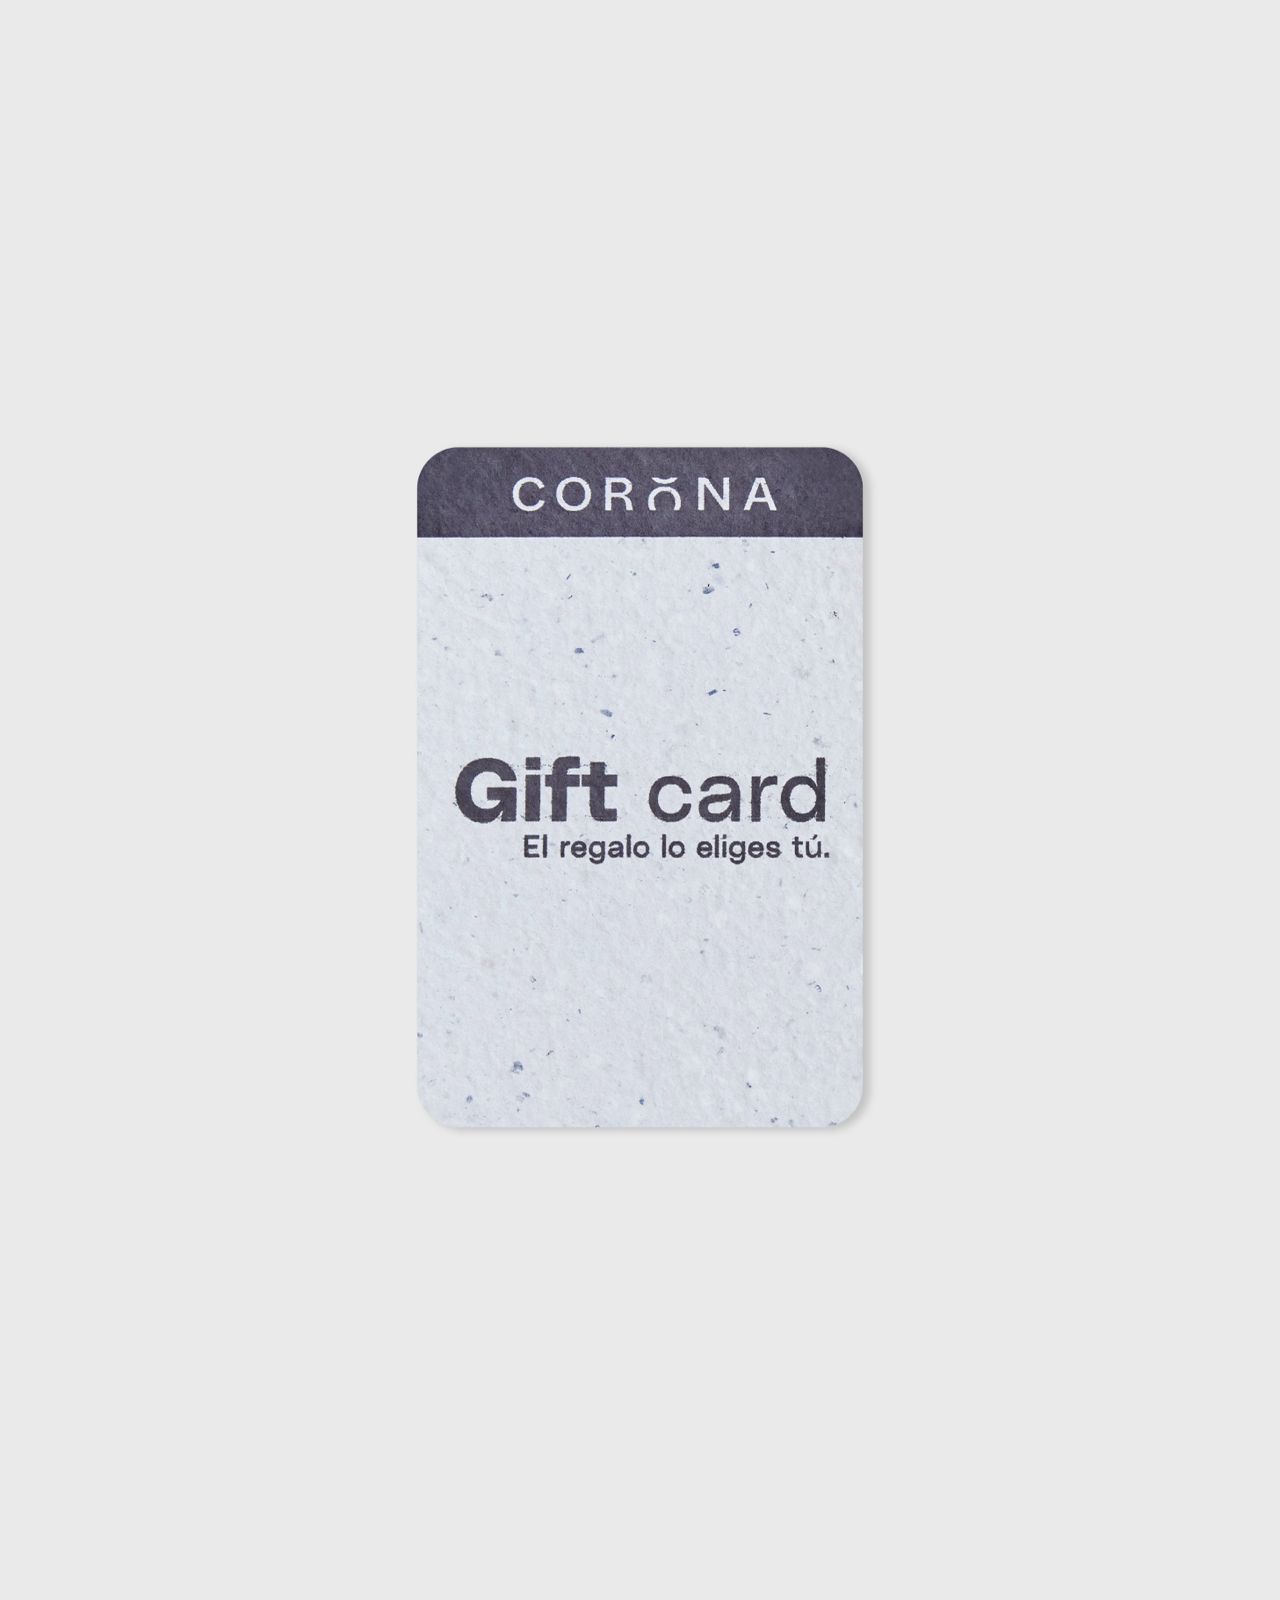 Tarjeta gift card corona.